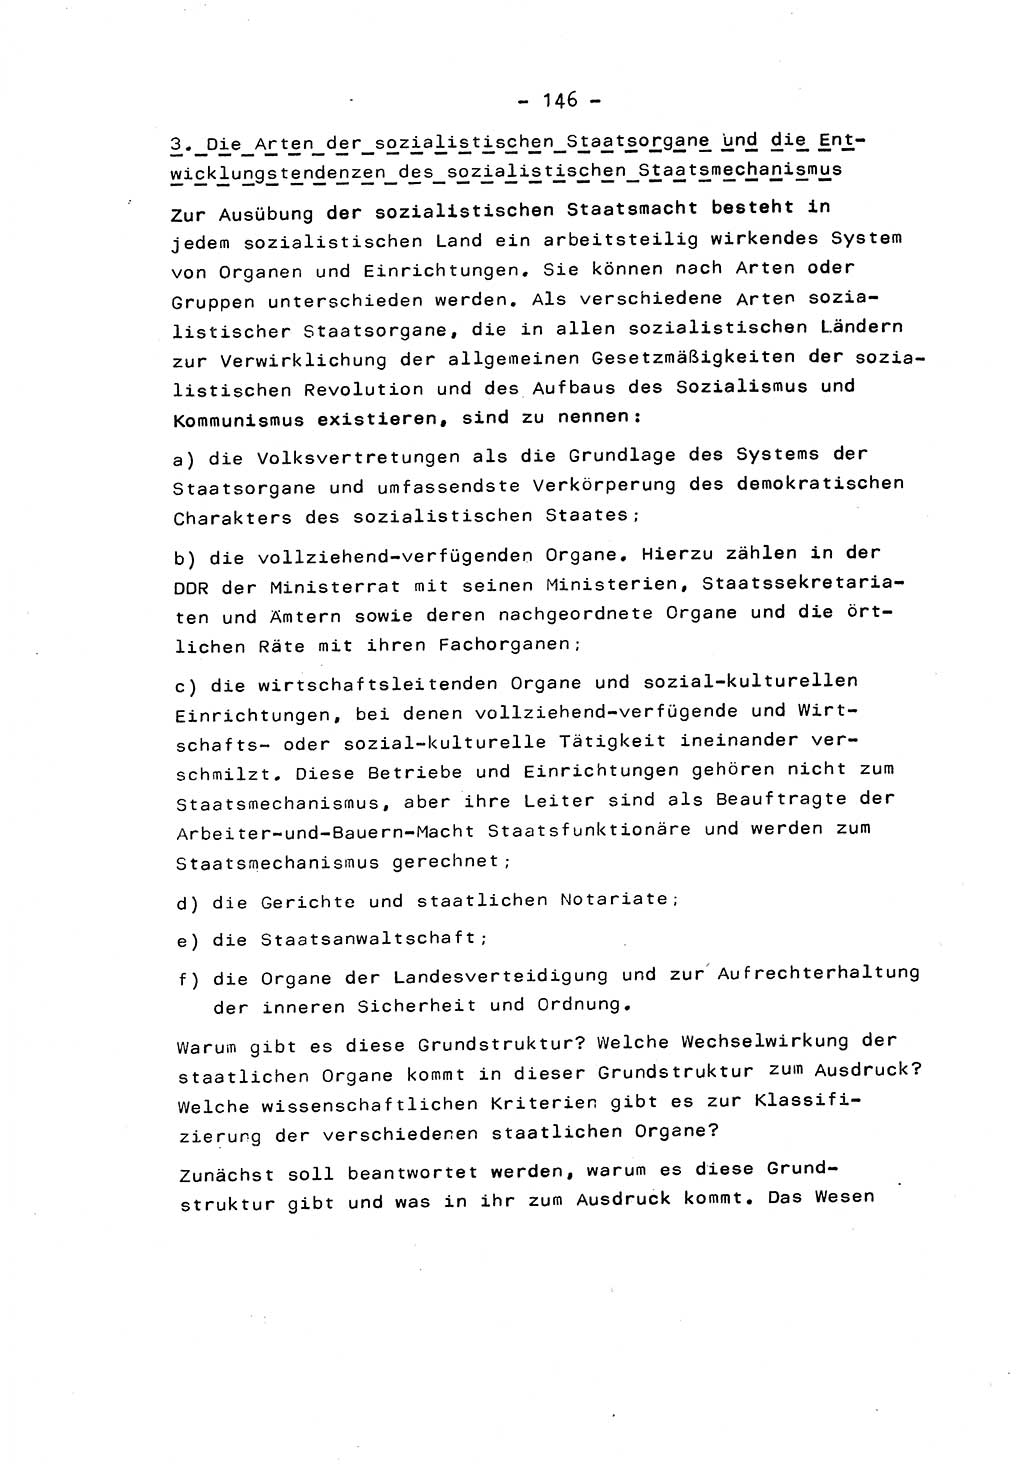 Marxistisch-leninistische Staats- und Rechtstheorie [Deutsche Demokratische Republik (DDR)] 1975, Seite 146 (ML St.-R.-Th. DDR 1975, S. 146)